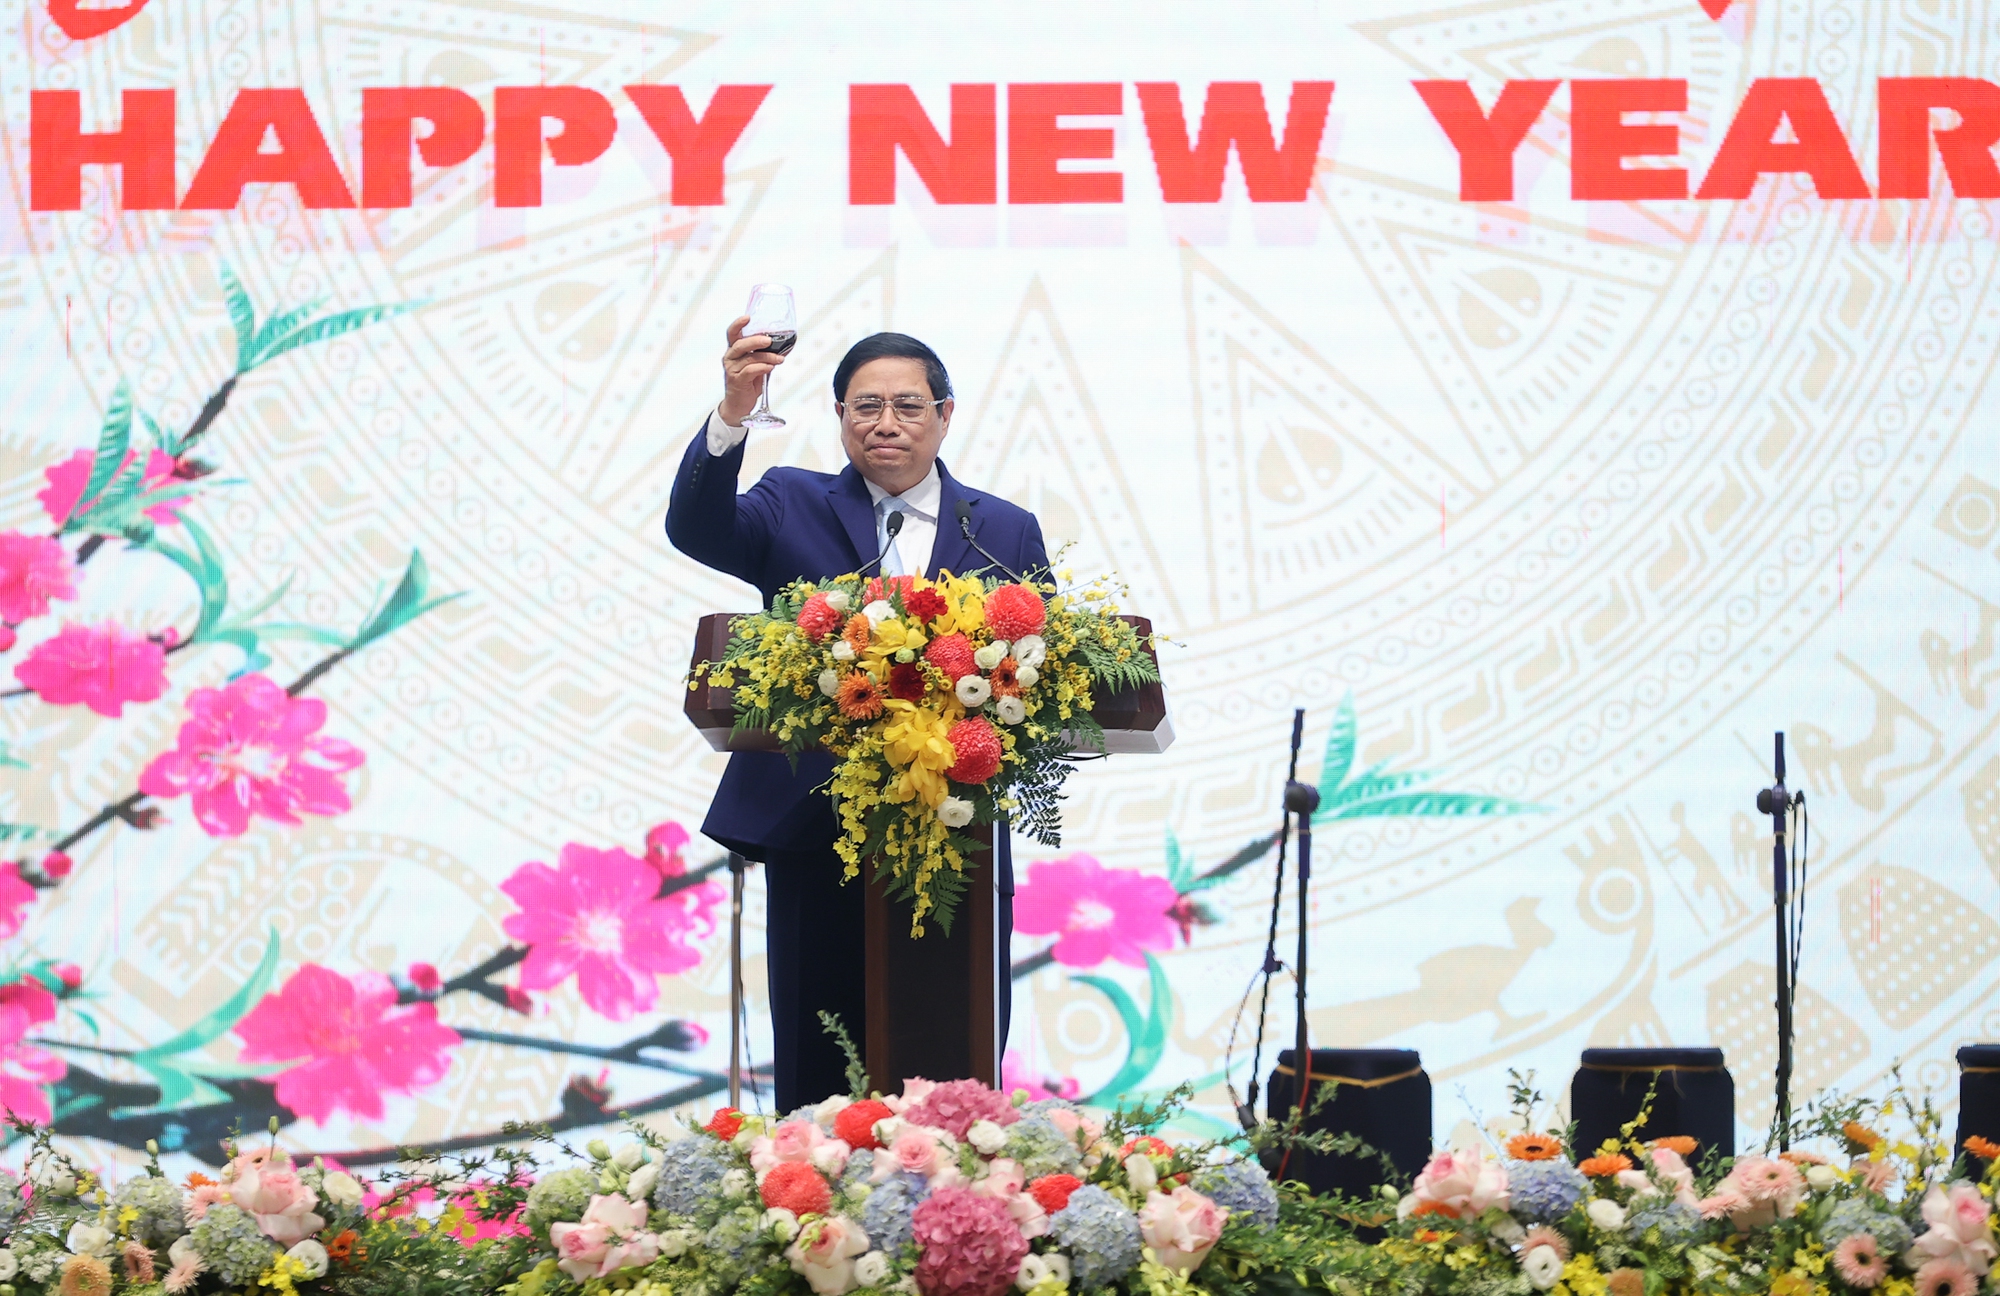 Thủ tướng gửi lời chúc mừng năm mới các đại biểu bằng câu đối của dân gian Việt Nam: ""Chúc Tết đến trăm điều như ý/ Mừng Xuân sang vạn sự thành công" - Ảnh: VGP/Nhật Bắc